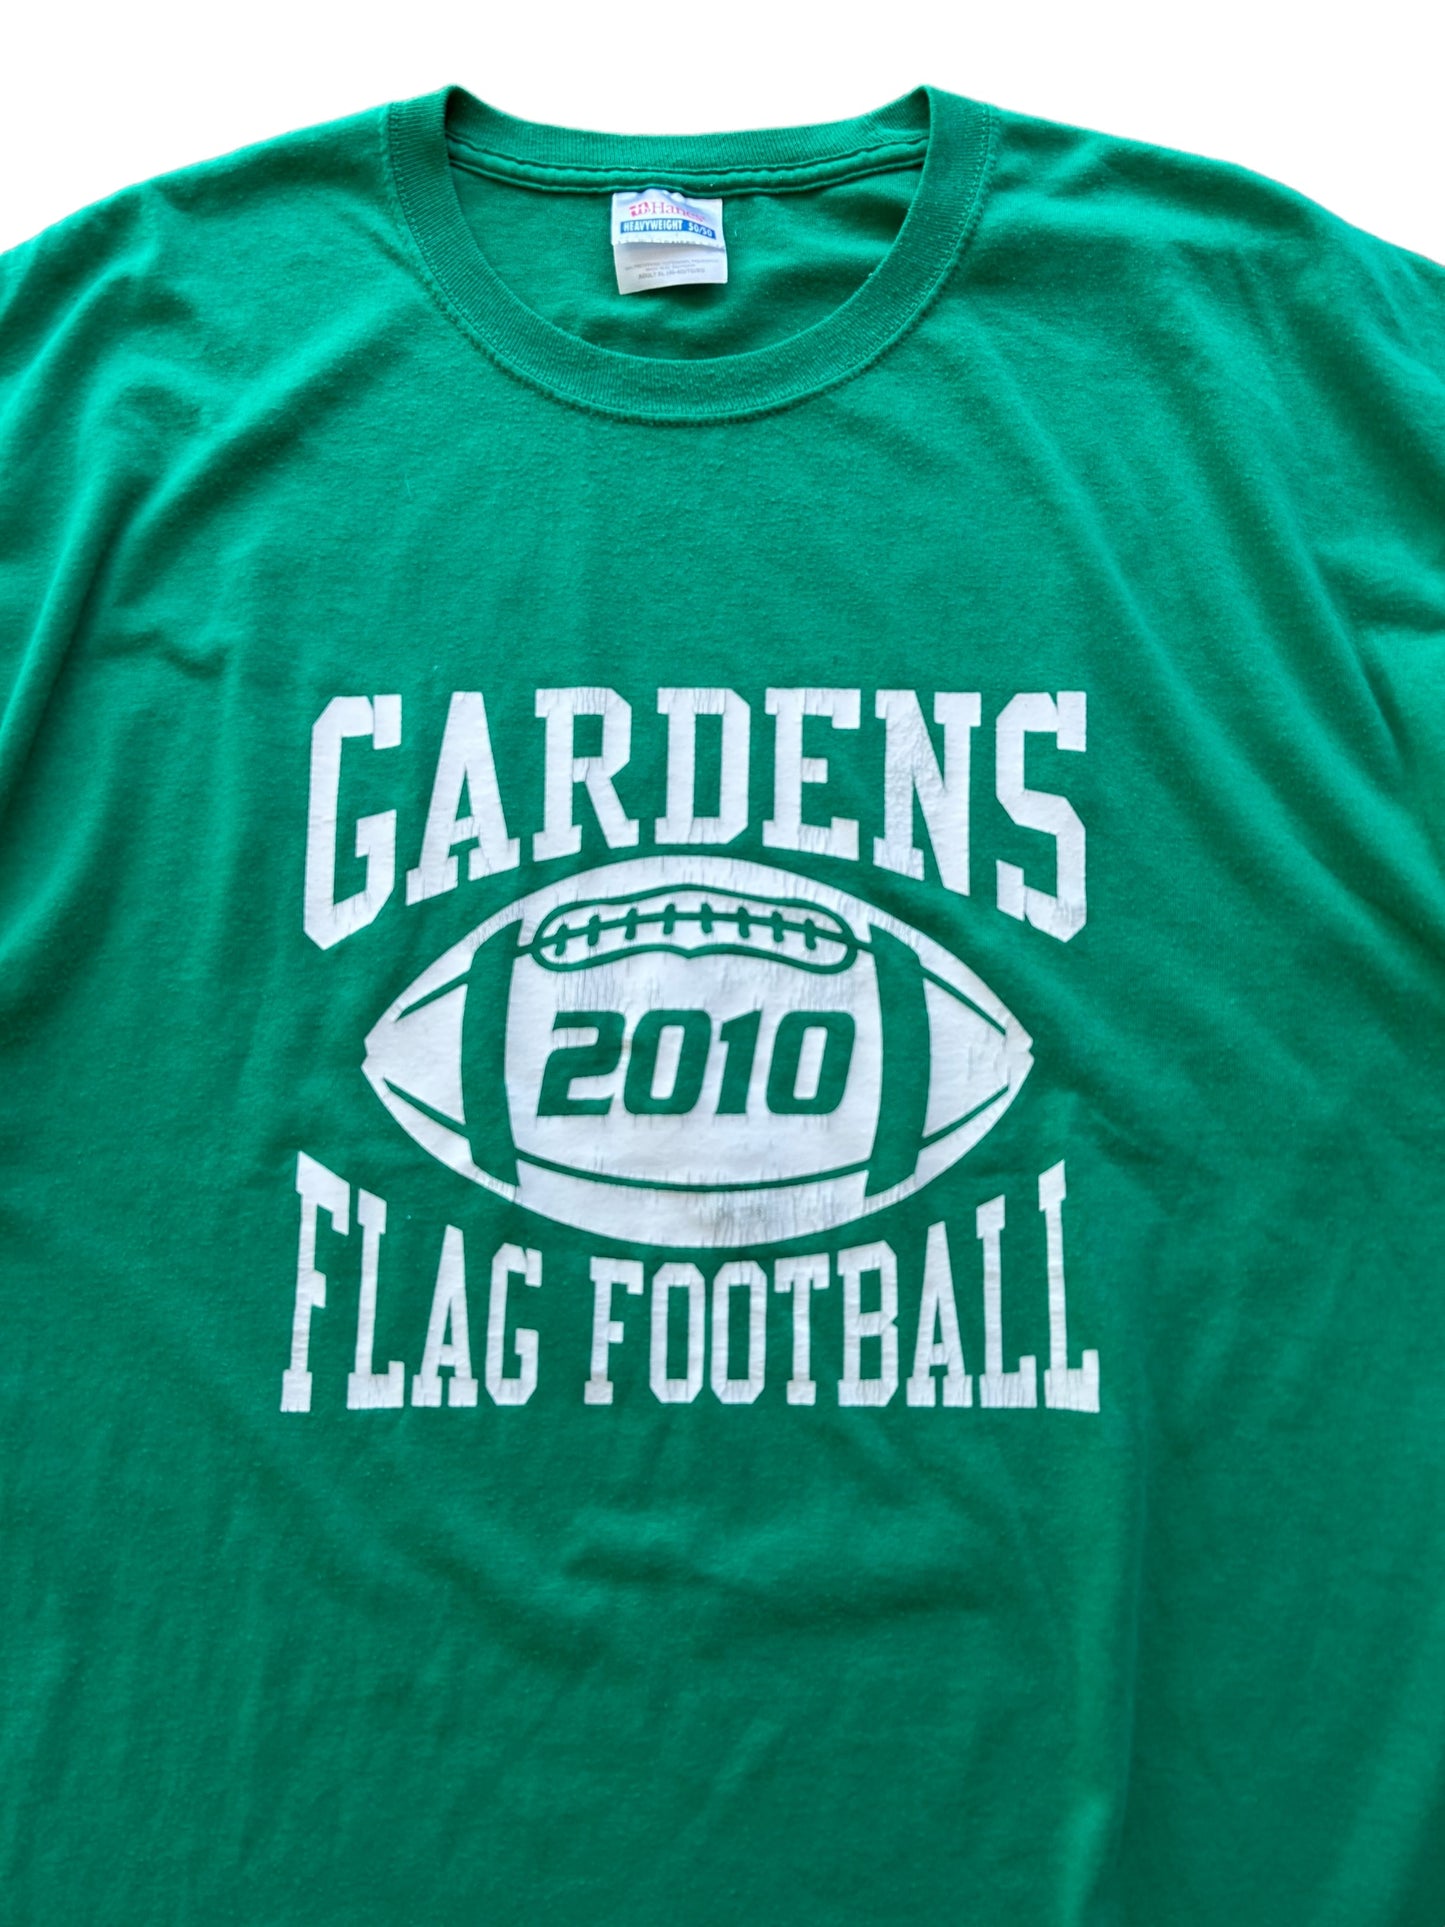 Gardens Flag Football Tee